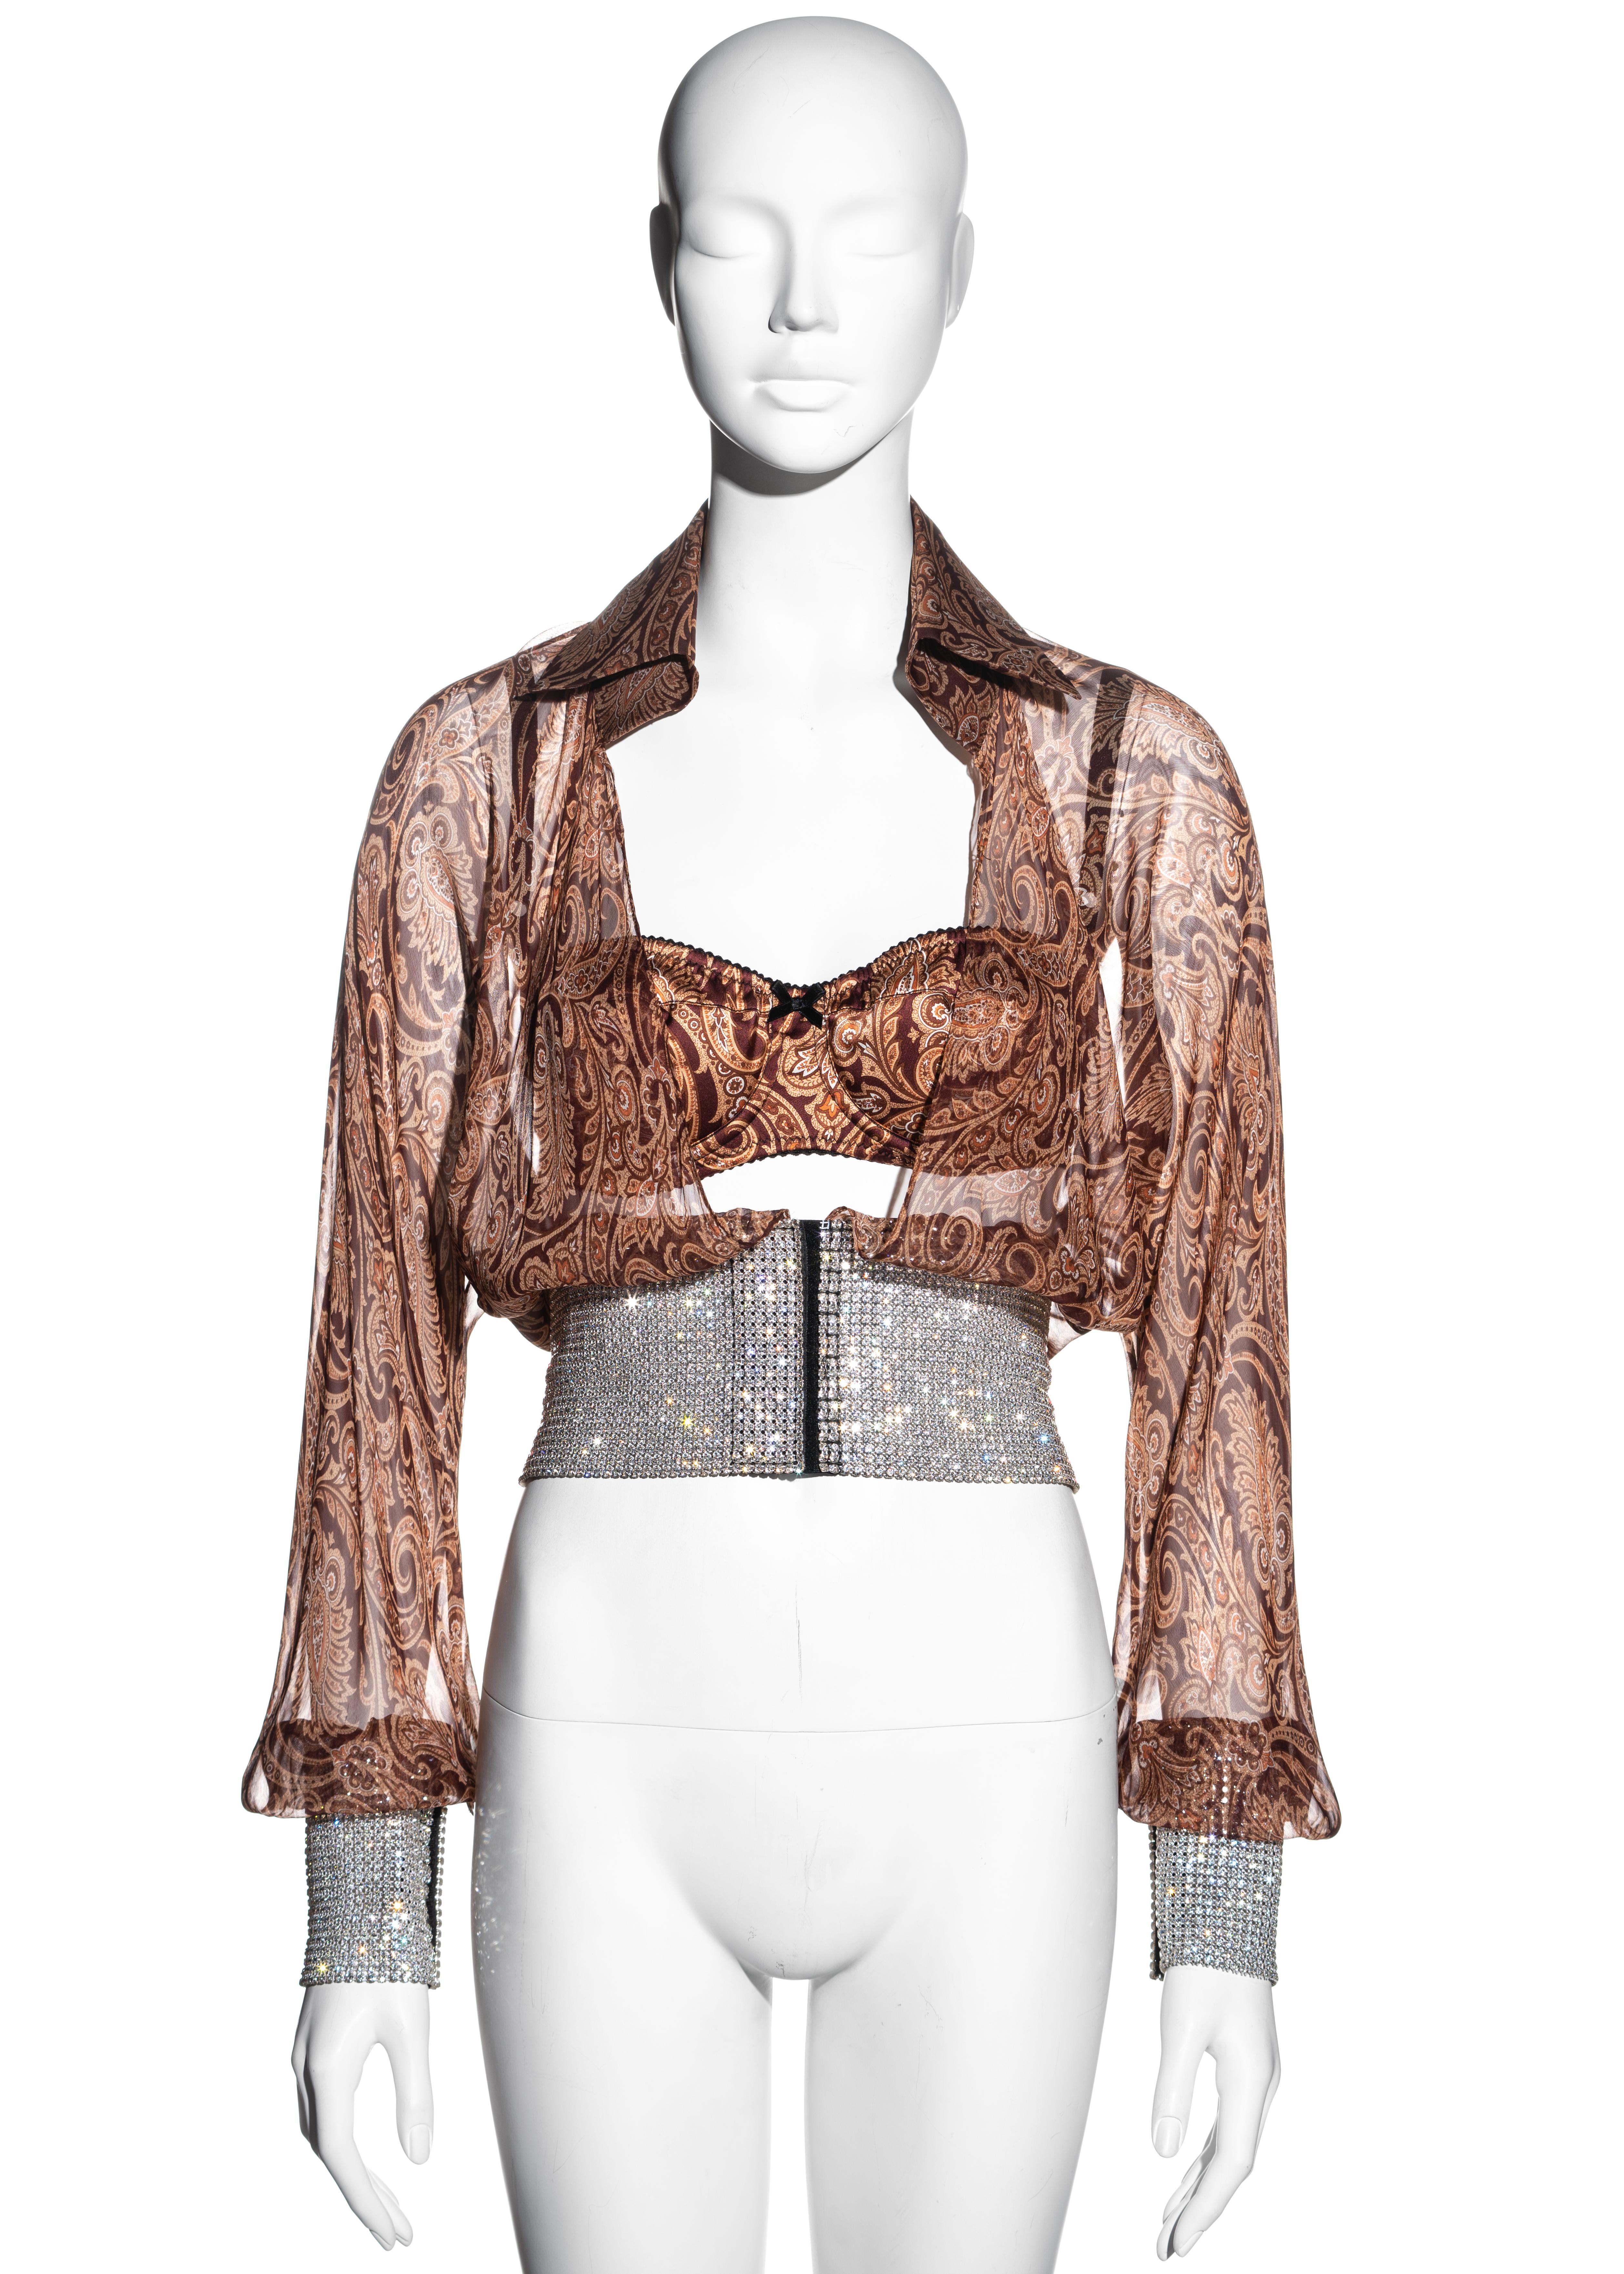 ▪ Dolce & Gabbana paisley printed chiffon blouse 
▪ 100% Silk 
▪ Matching bra
▪ Large rhinestone mesh waistband and cuffs 
▪ Velcro fastening  
▪ IT 42 - FR 38 - UK 10 - US 6 
▪ Spring-Summer 2000